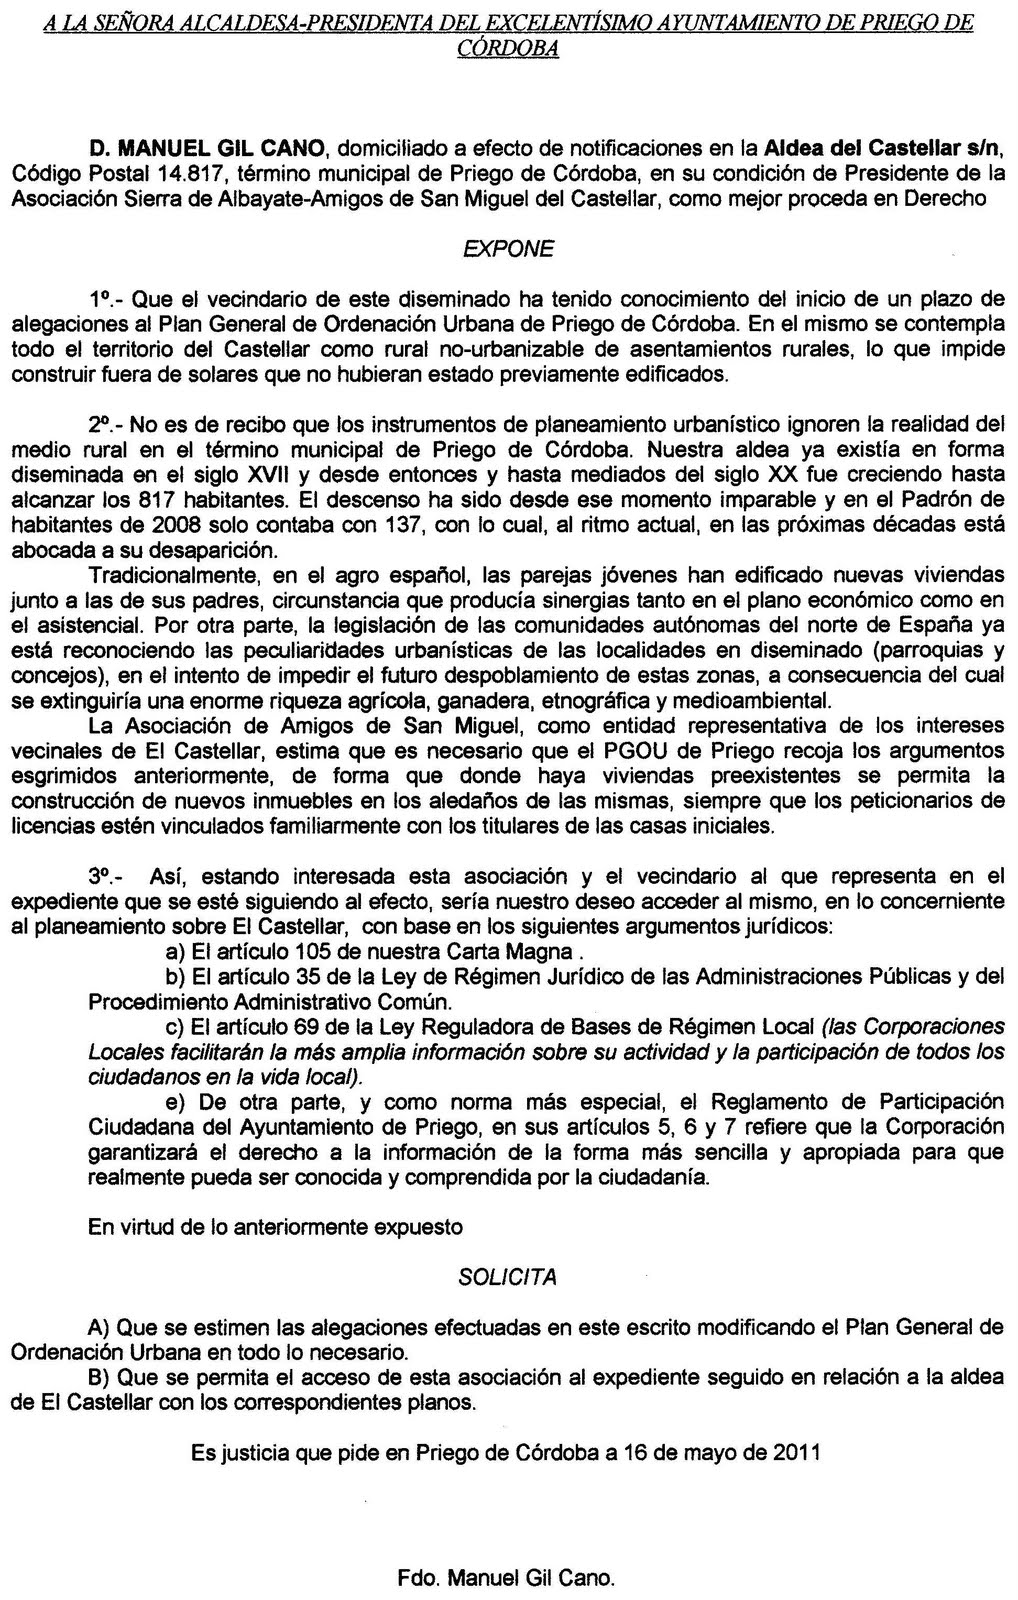 Aldea del Castellar: 16-05-2011 escrito de alegaciones al Plan General de  Ordenación Urbana de Priego